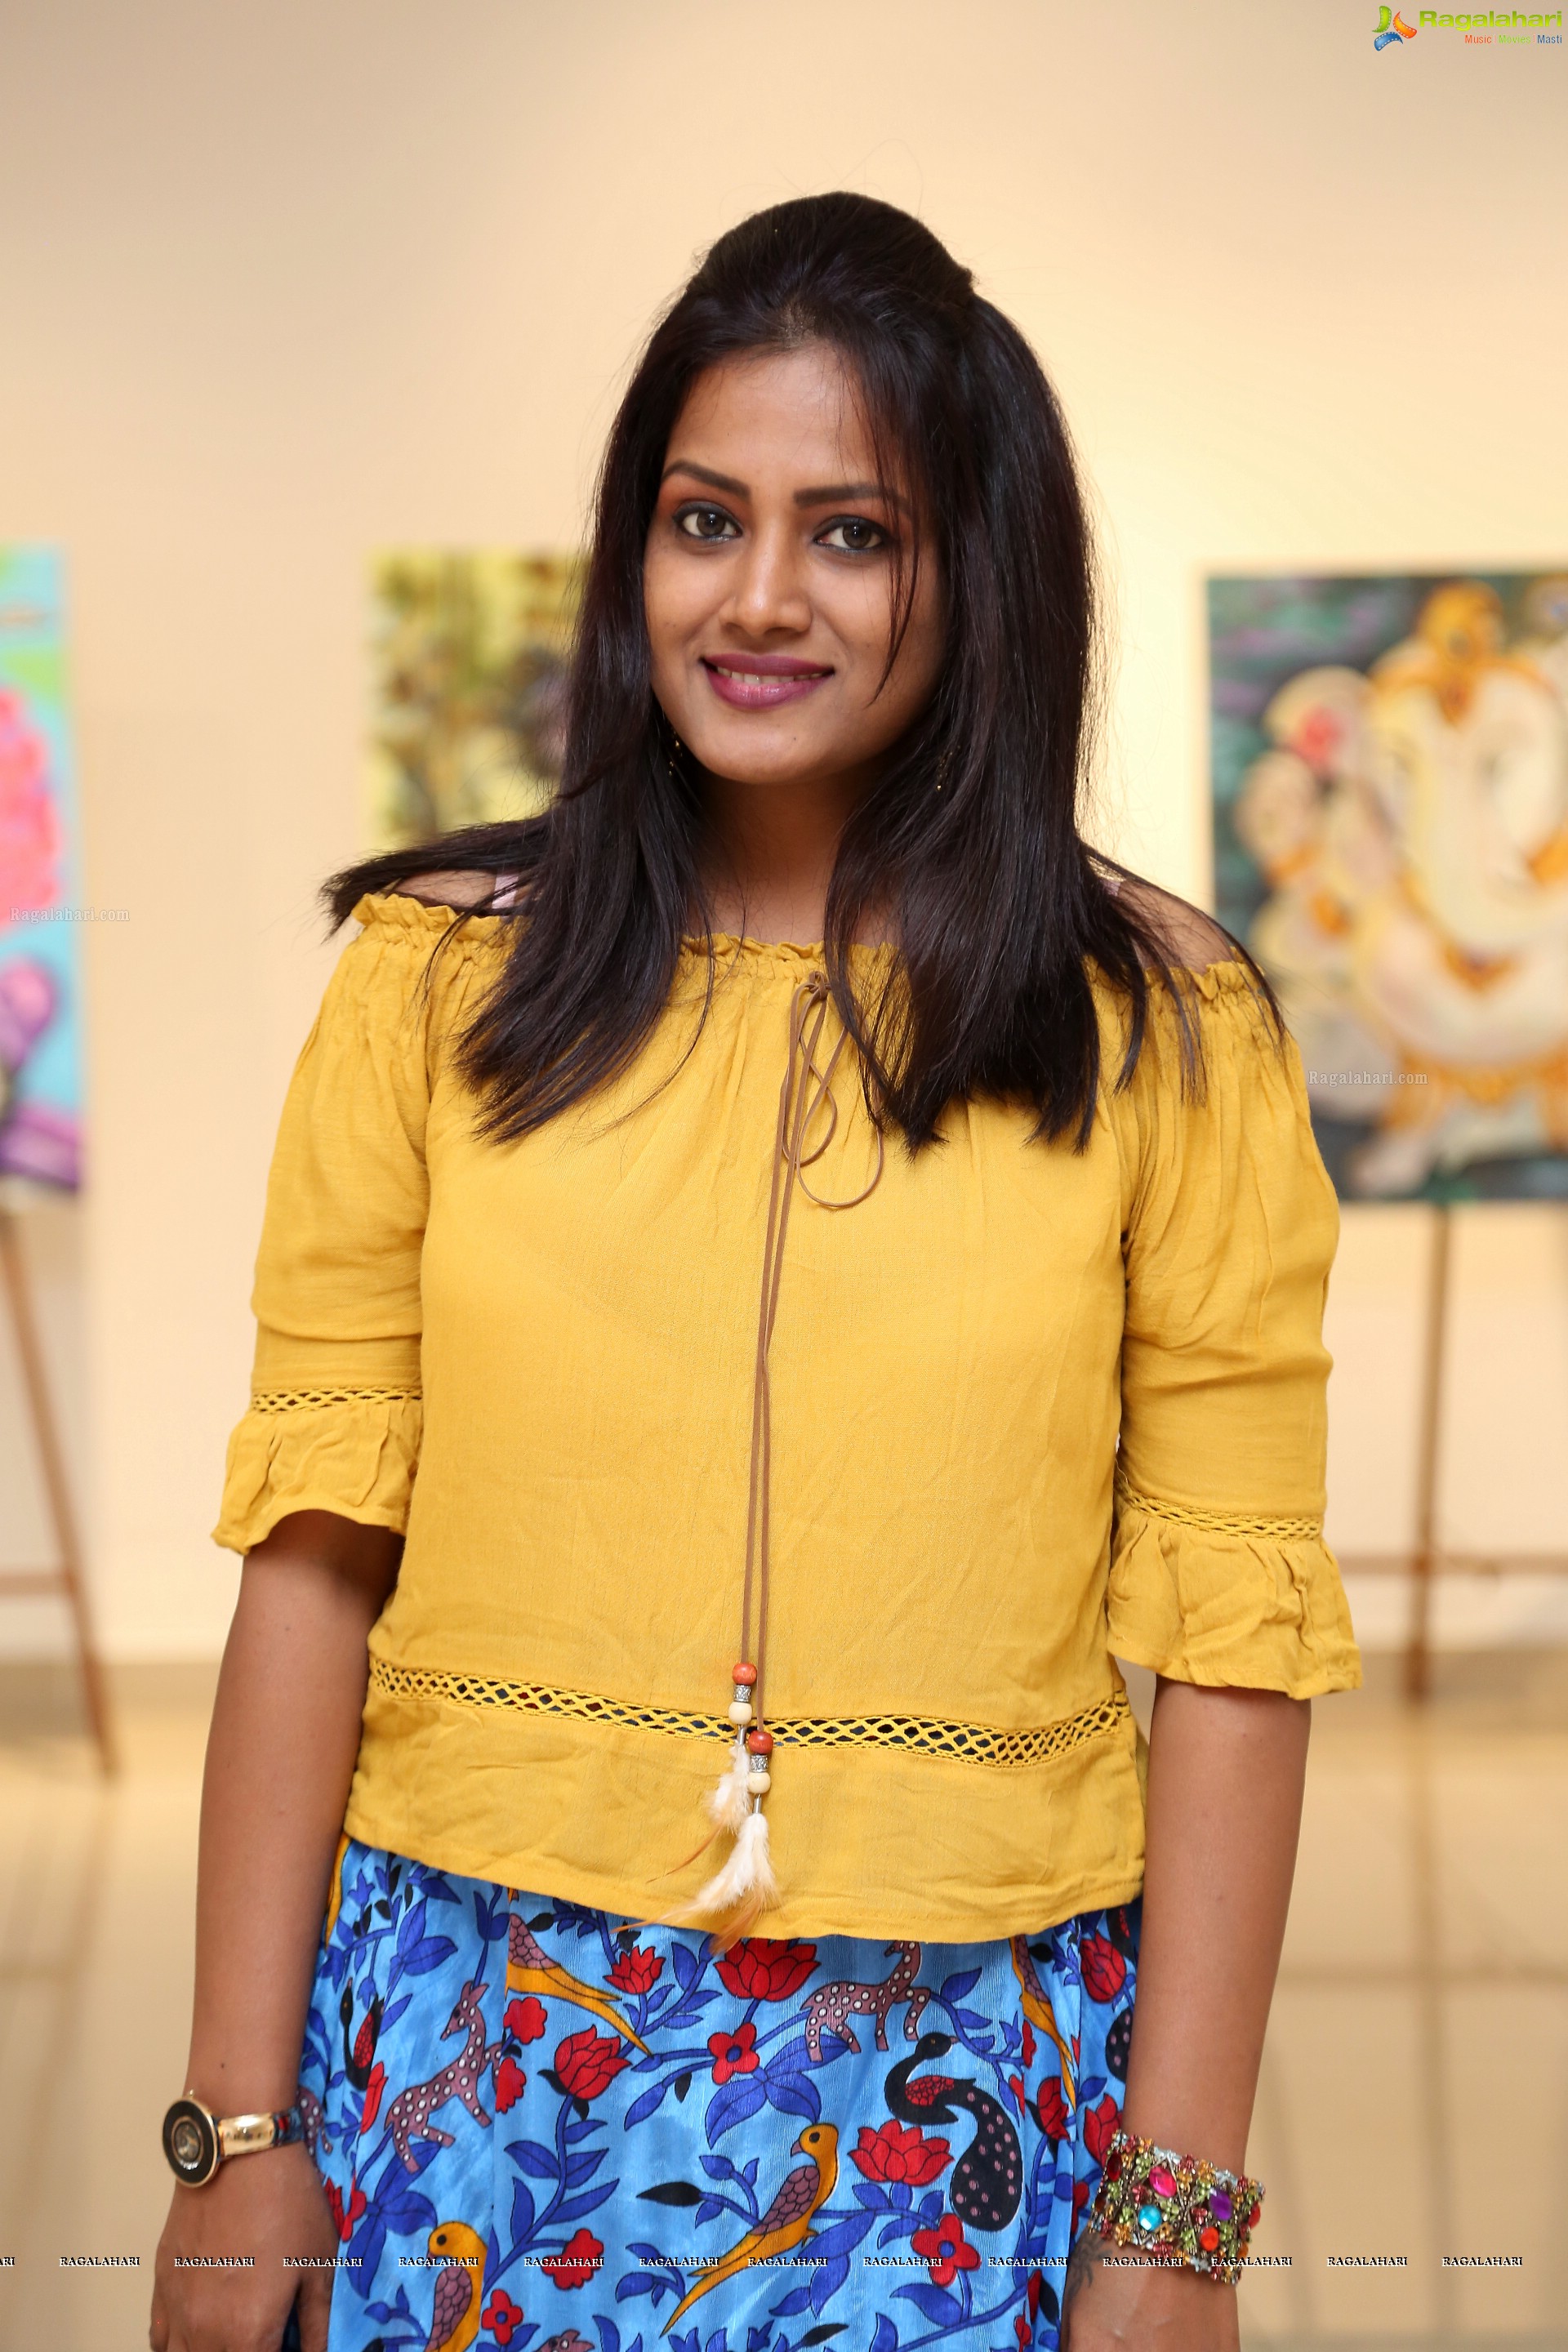 Suchitra Ammu Anandhan at Sucharita Singh Art Exhibition - HD Gallery